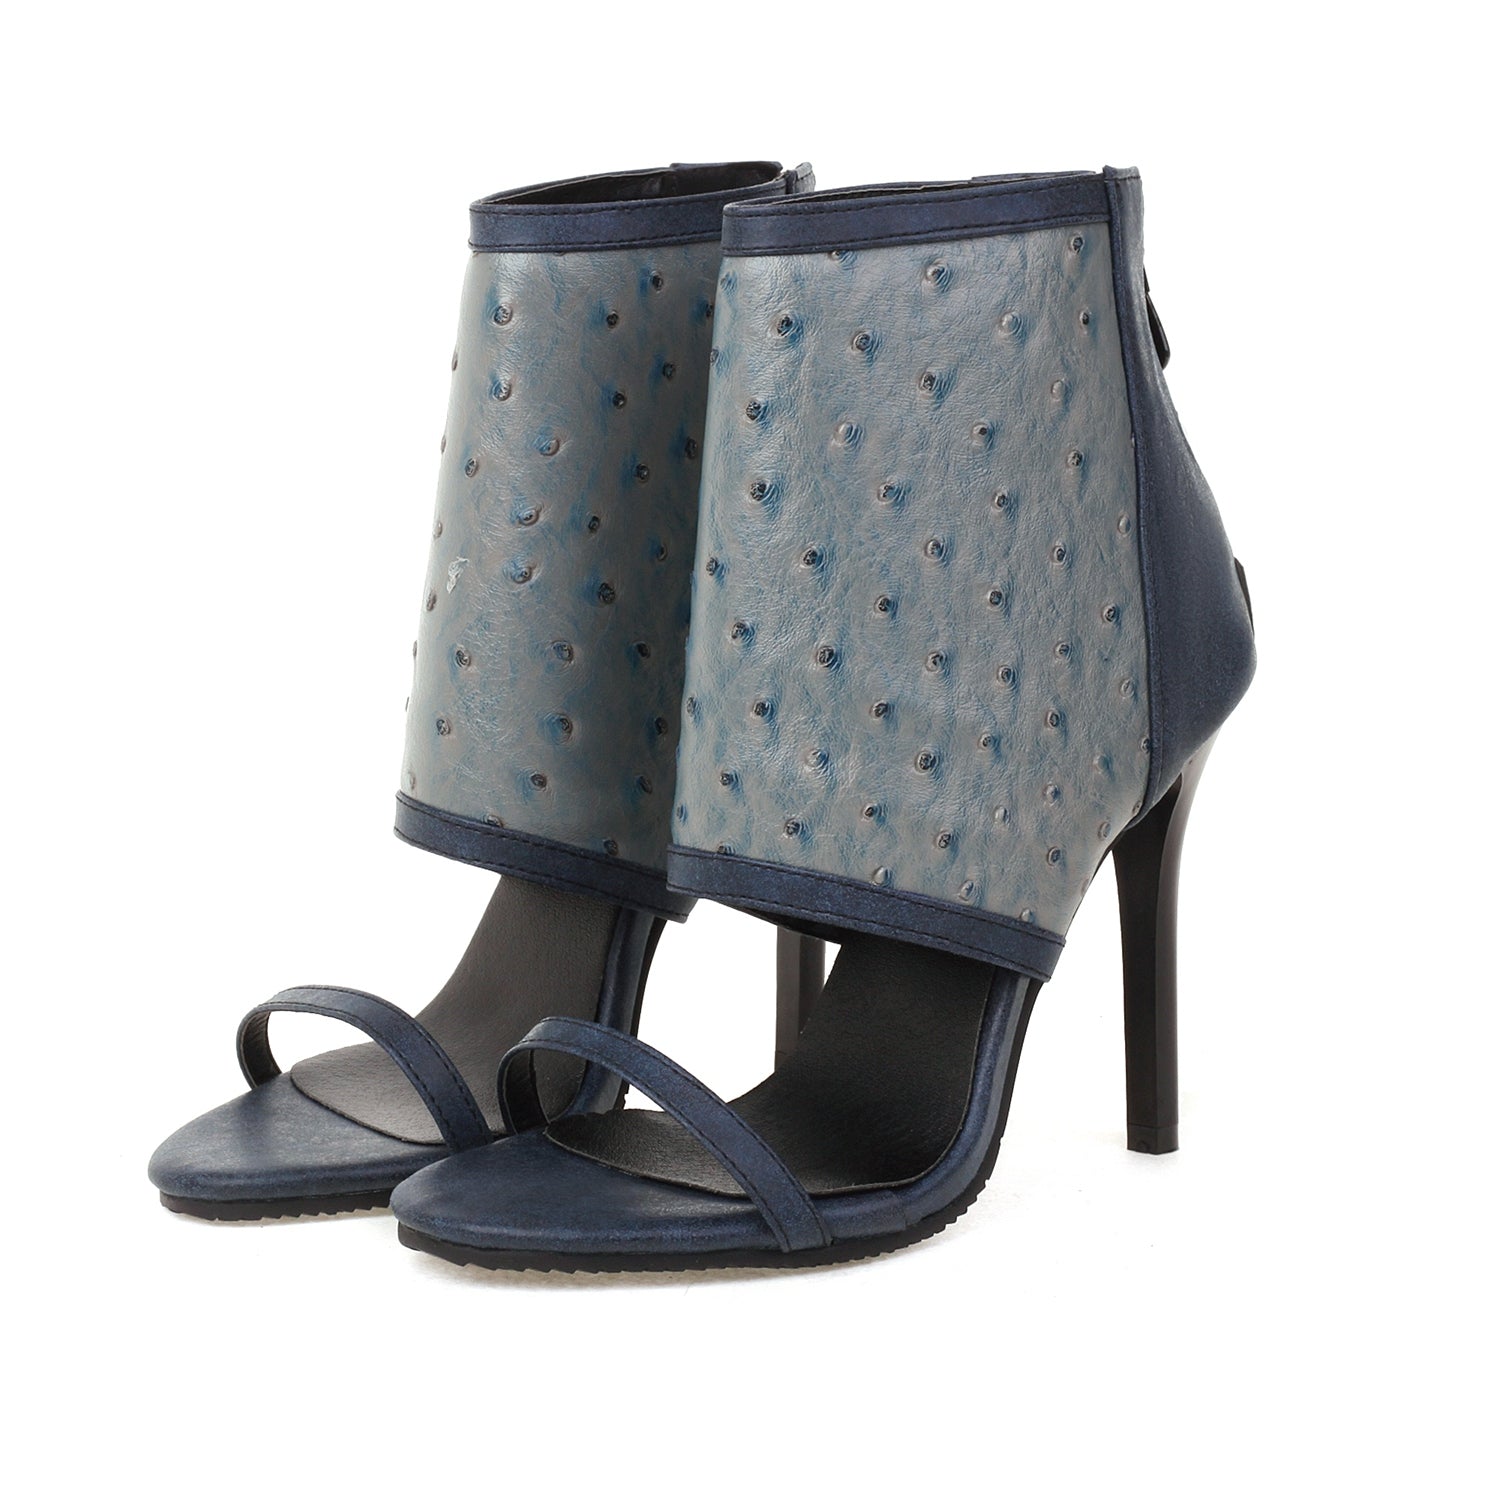 Bigsizeheels Stiletto Heel Zipper Suede Upper Ankle Strap Sandals - Blue best oversized womens heels are from bigsizeheel®